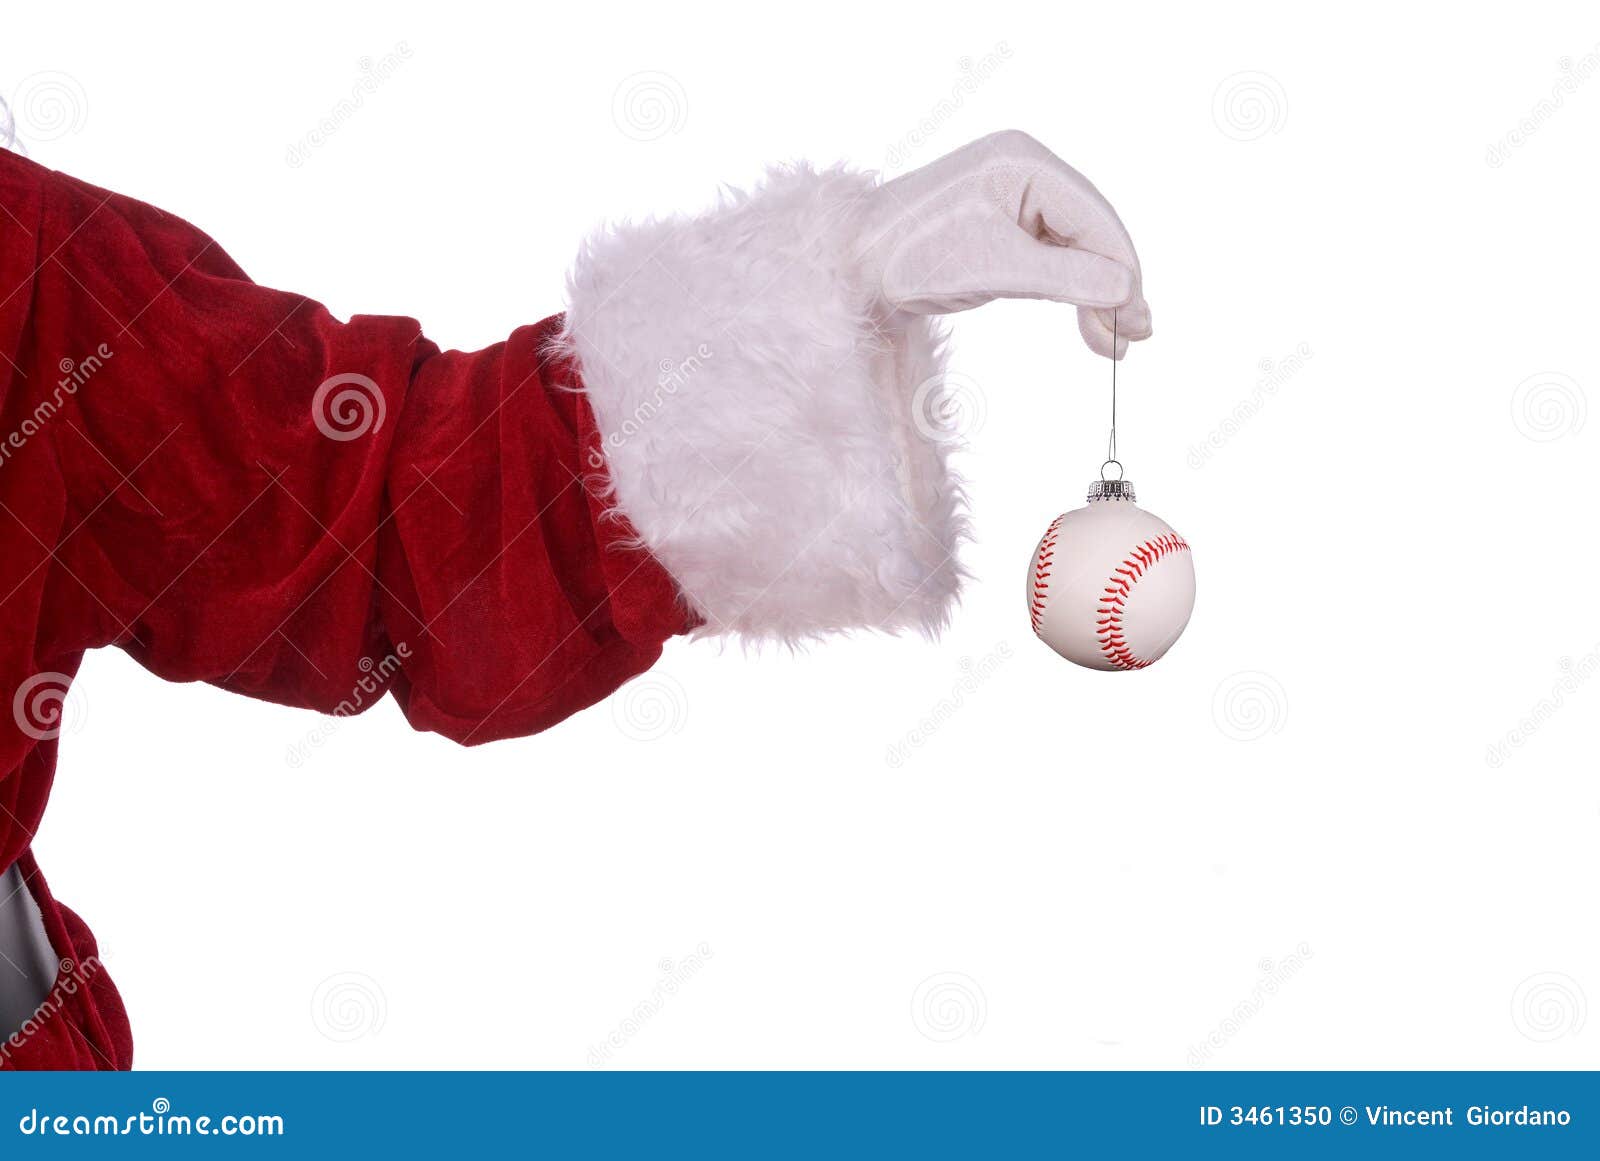 Papá Noel con el ornamento del béisbol en su mano con guantes blanca